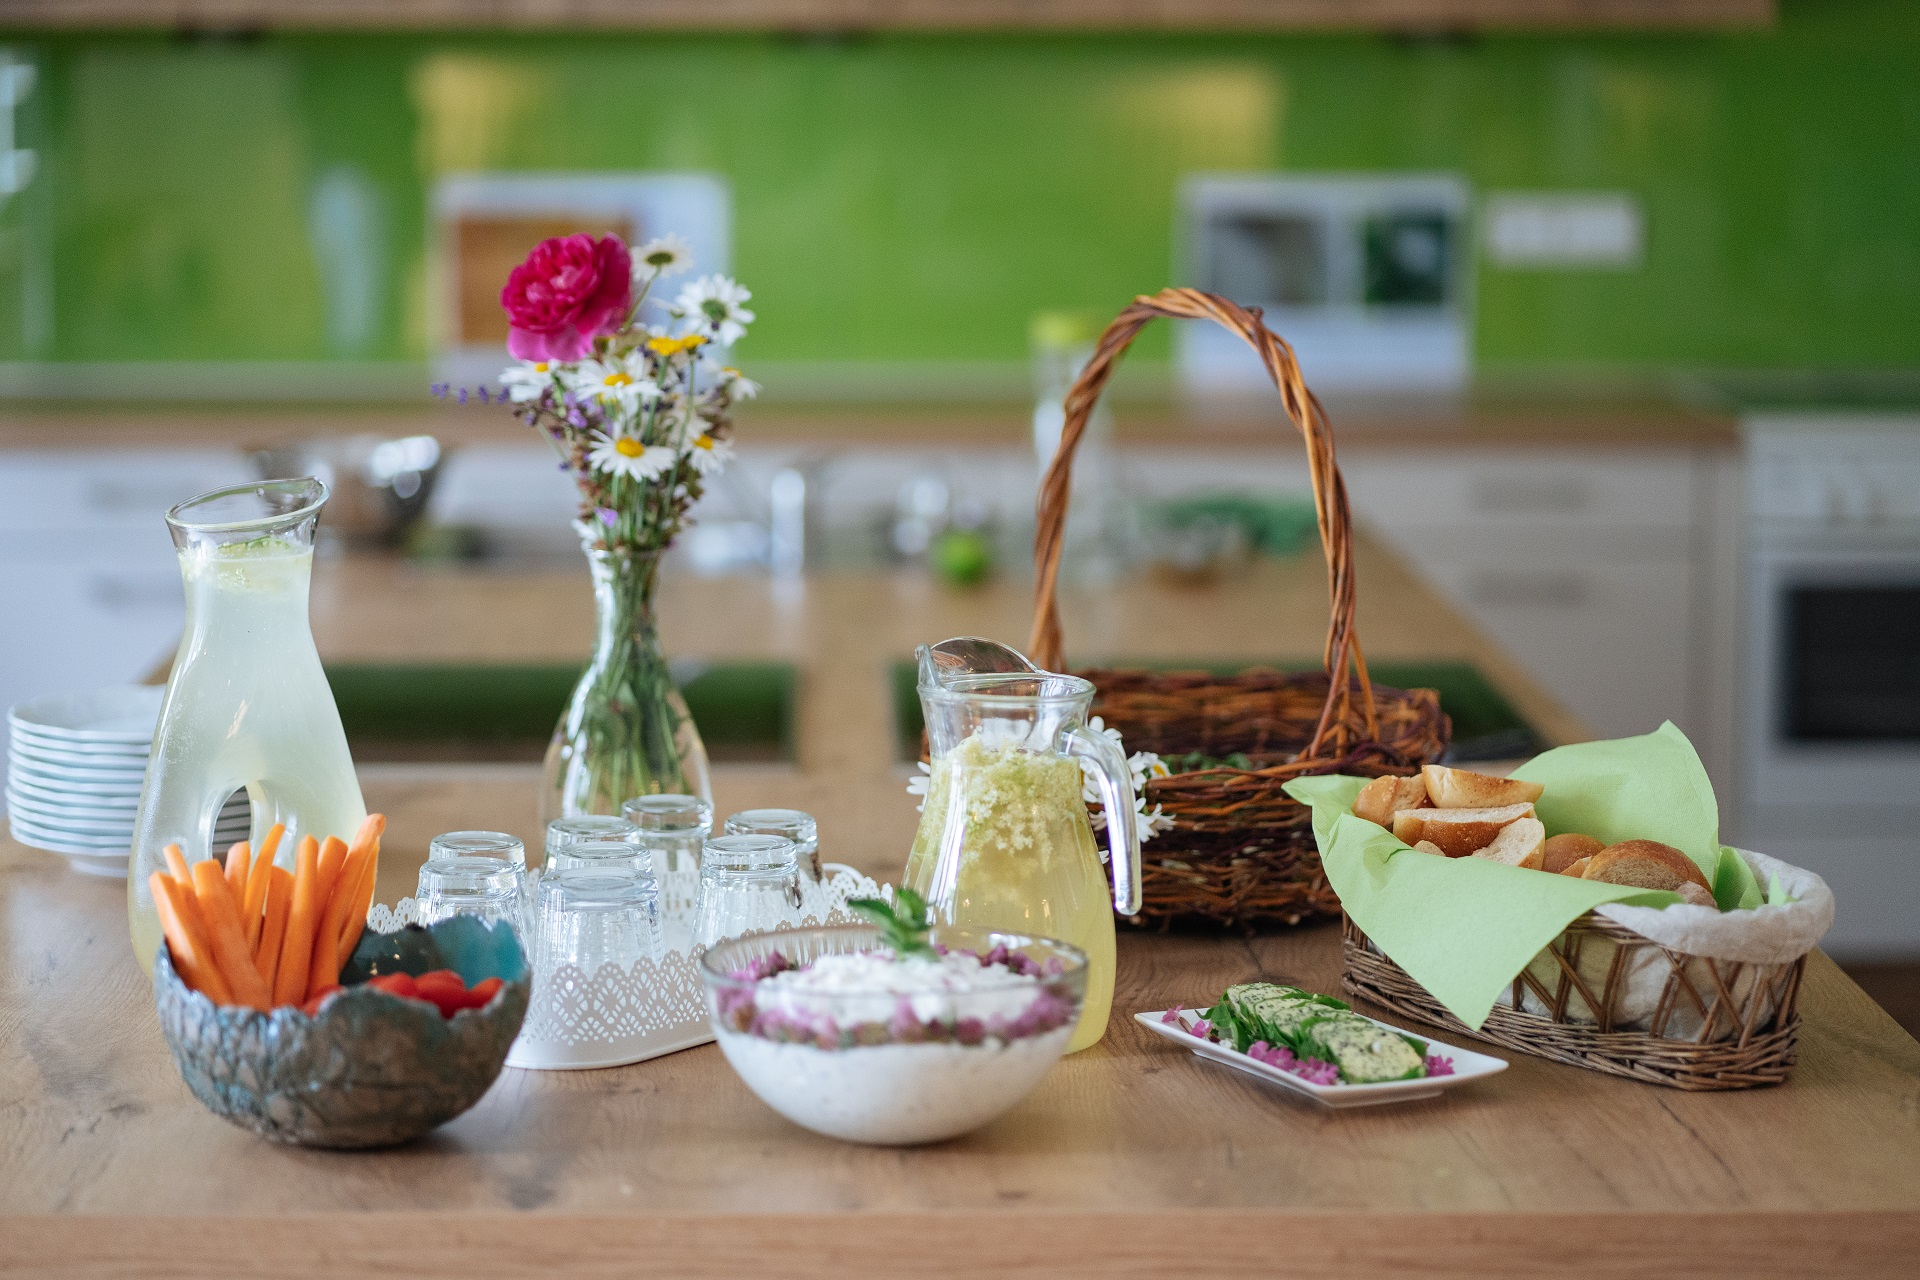 Une table avec un bouquet de fleurs colorées, un panier rempli de pain, une limonade à base de sureau, un fromage blanc naturel affiné aux herbes, plusieurs verres et un bol de légumes frais.